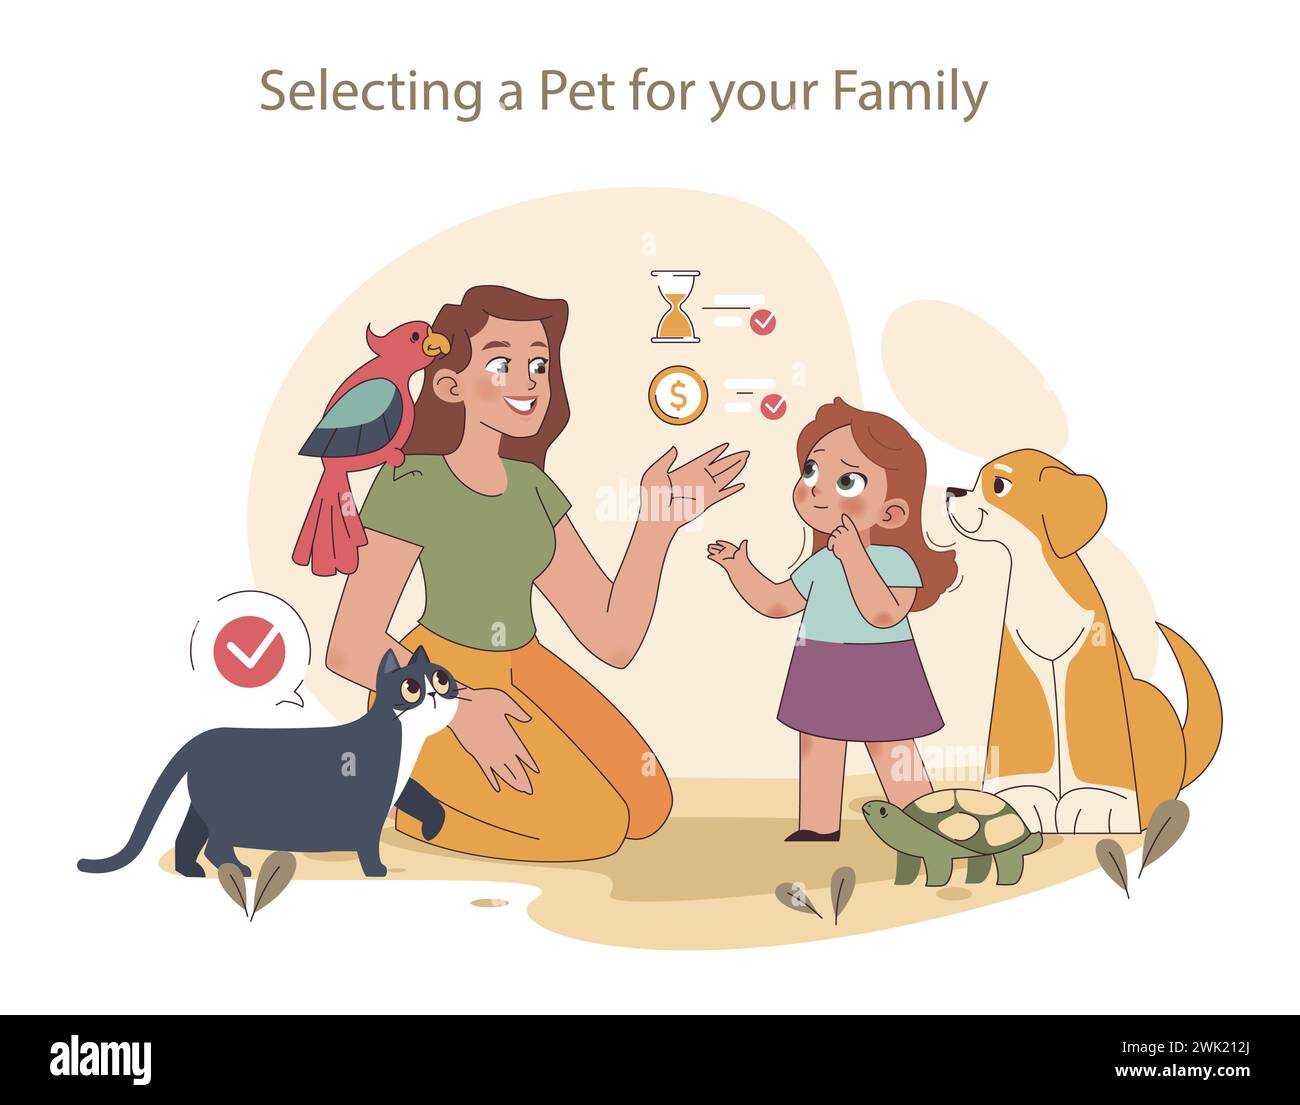 Familienwahlkonzept. Eine Mutter führt ihr Kind bei der Auswahl eines Haustieres, wodurch eine Verbindung zwischen Tieren und Familie hergestellt wird. Stock Vektor